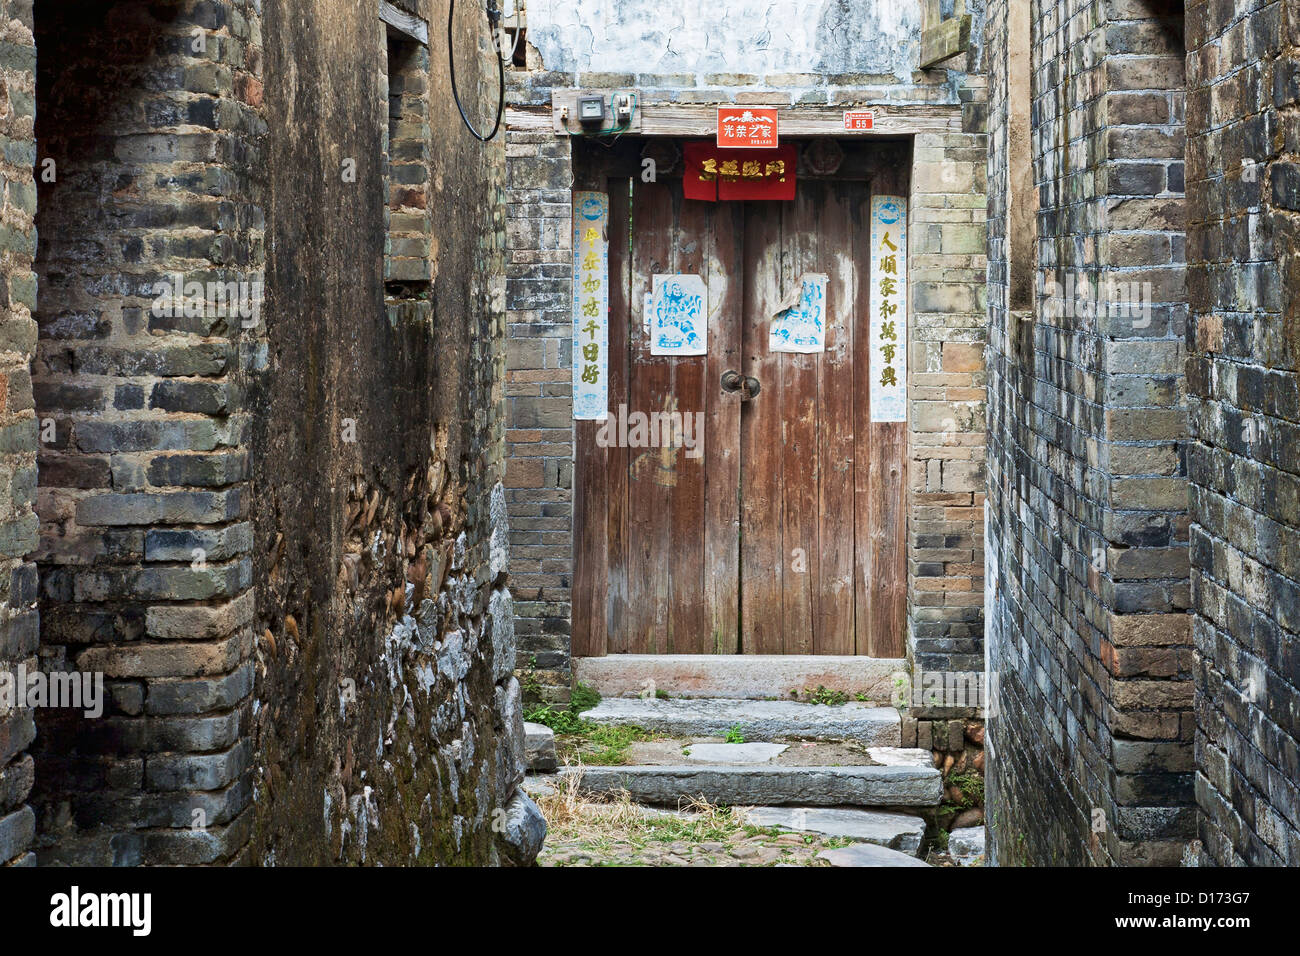 La belle architecture de Jiangtou ancien Village dans la région autonome Zhuang du Guangxi, Chine Banque D'Images